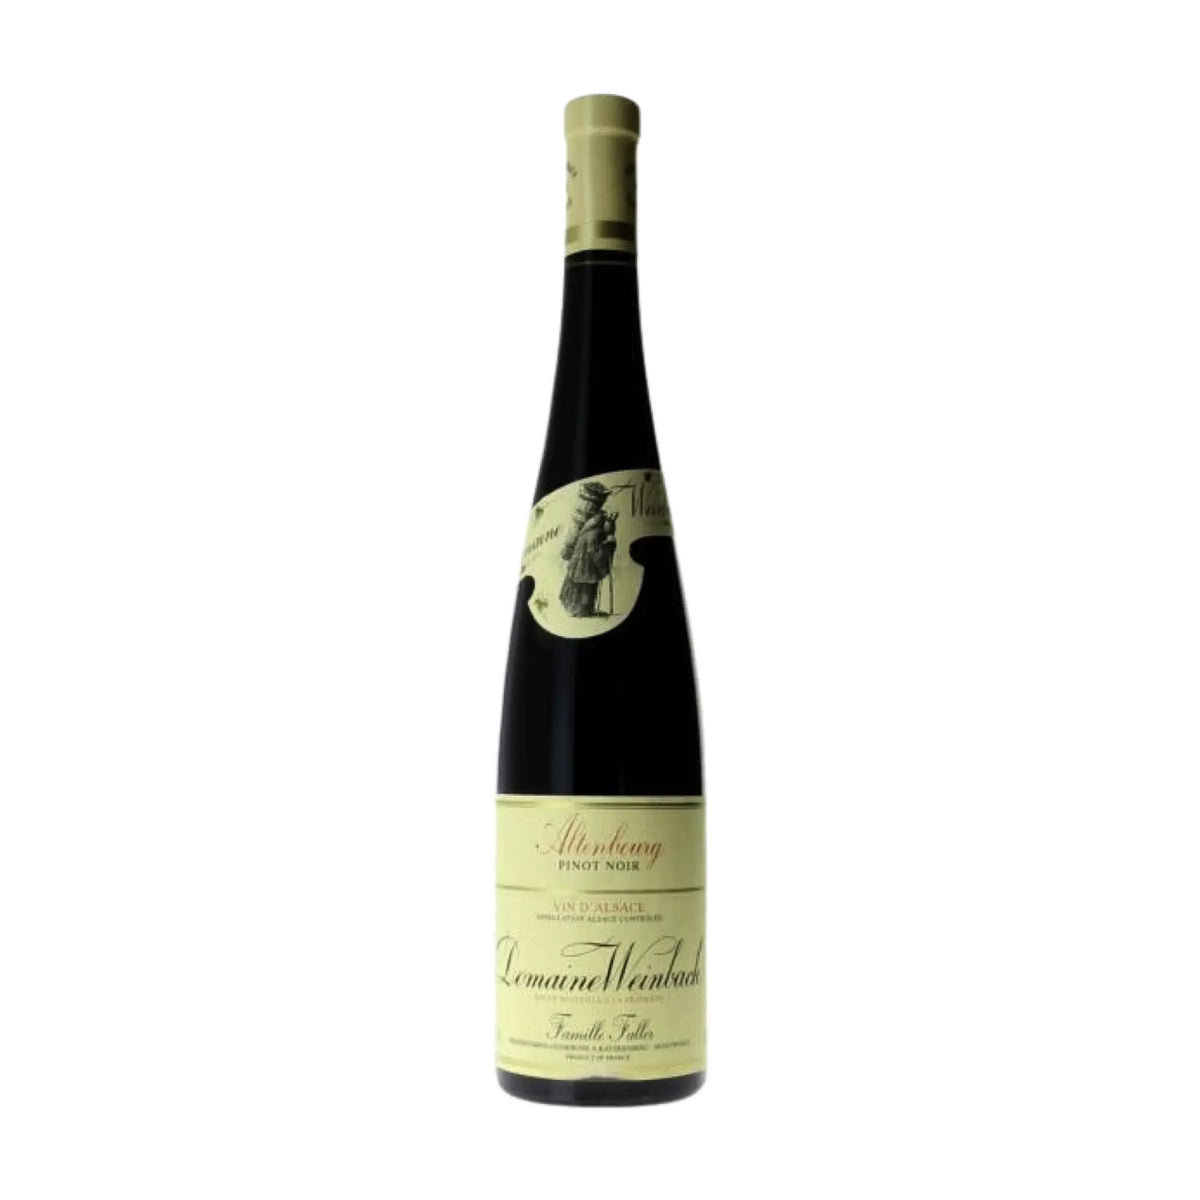 Domaine Weinbach-Rotwein-Pinot Noir-2020 Pinot Noir Altenbourg-WINECOM